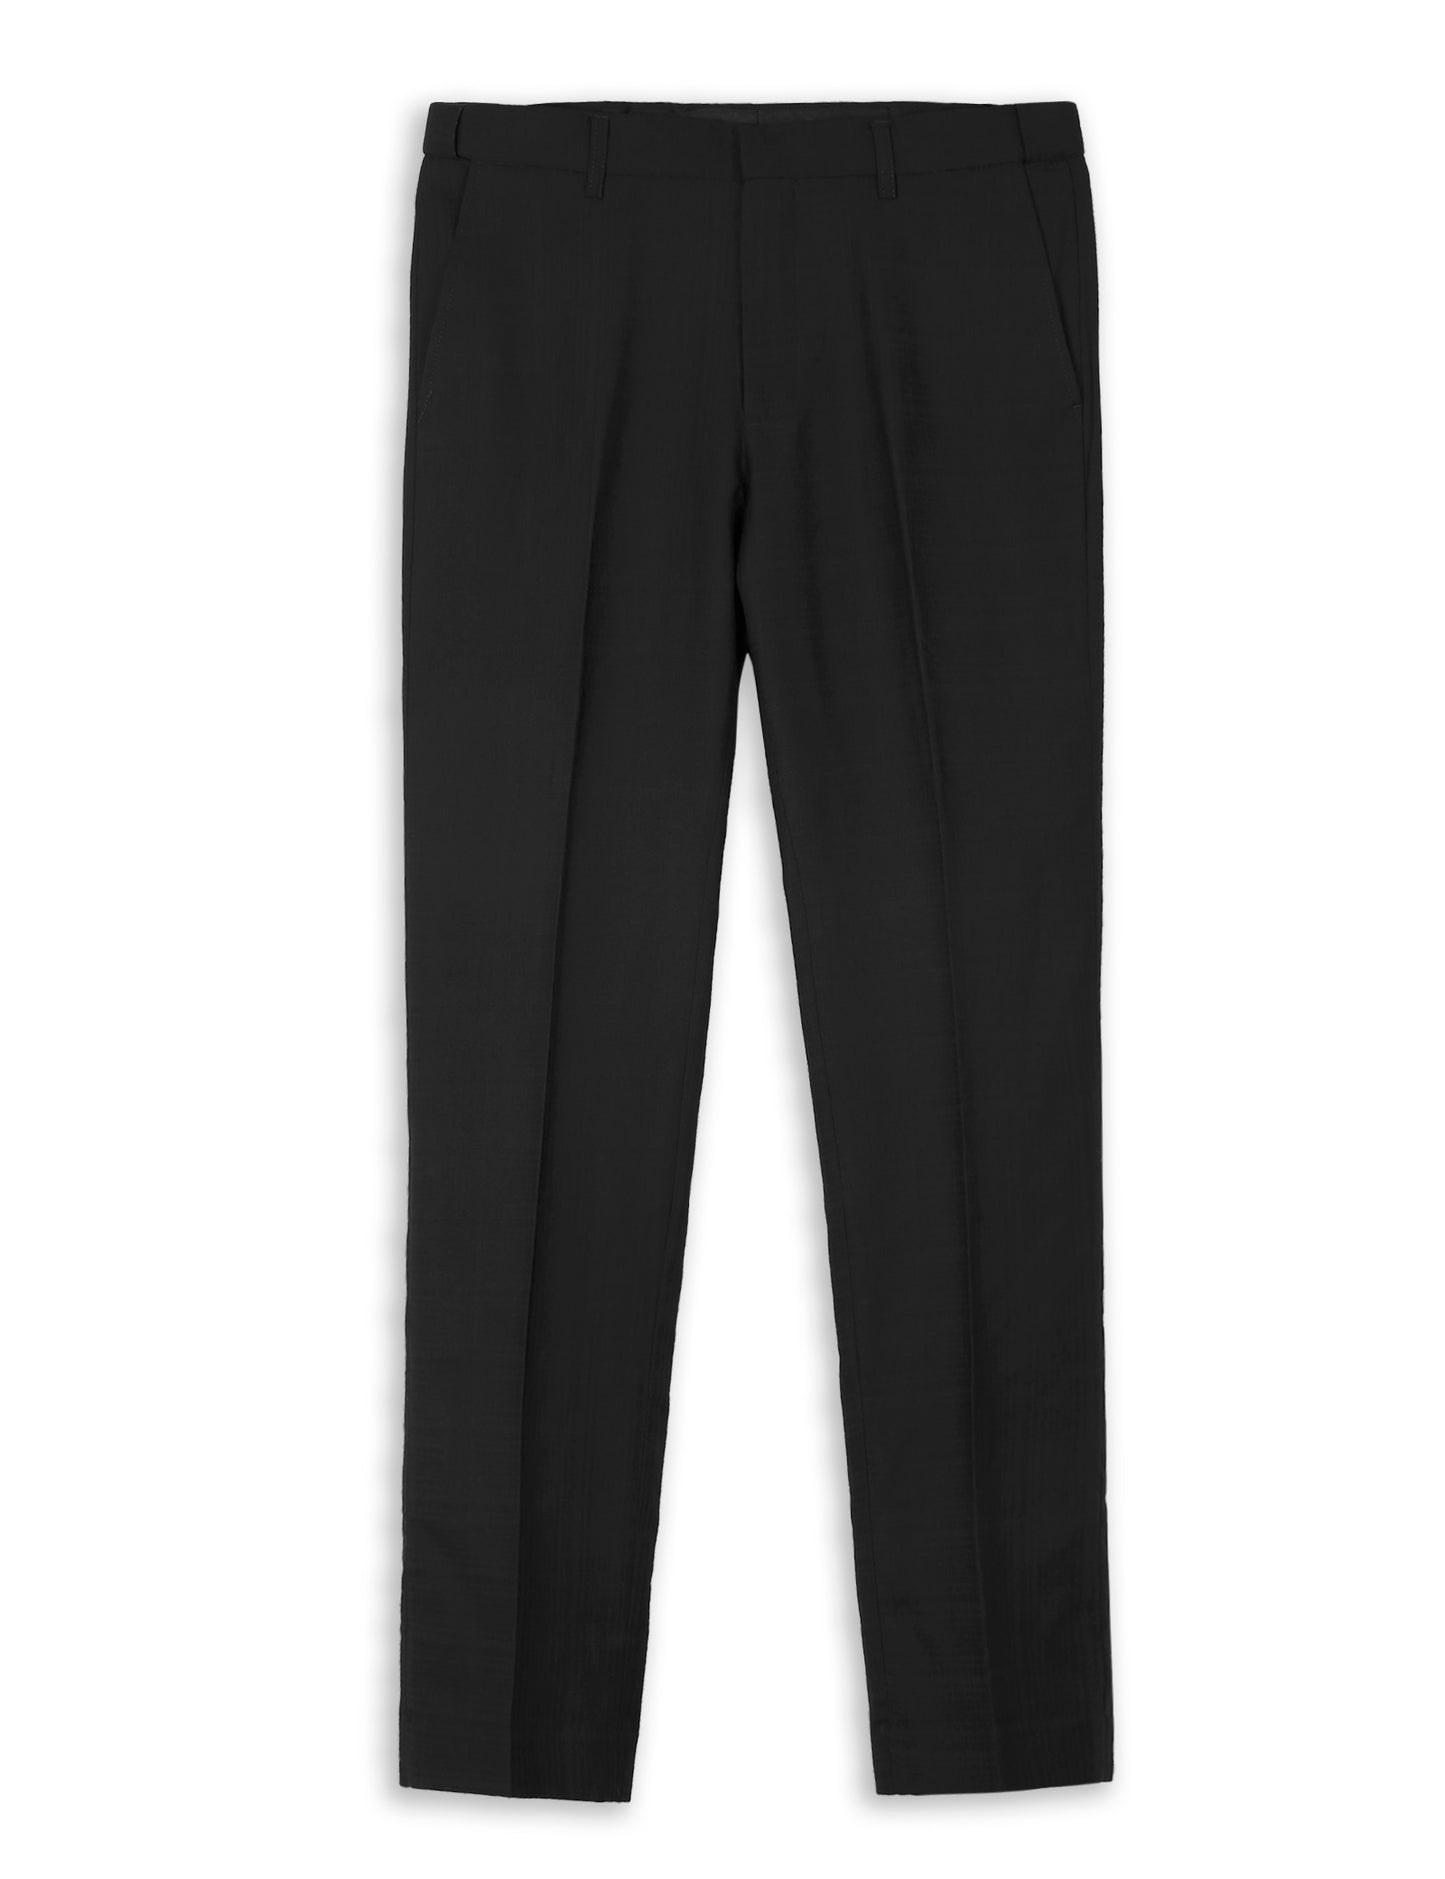 Alizeal Mens Plaid Dress Pants Hidden Expandable Waist Business Trousers Slim Fit, Black